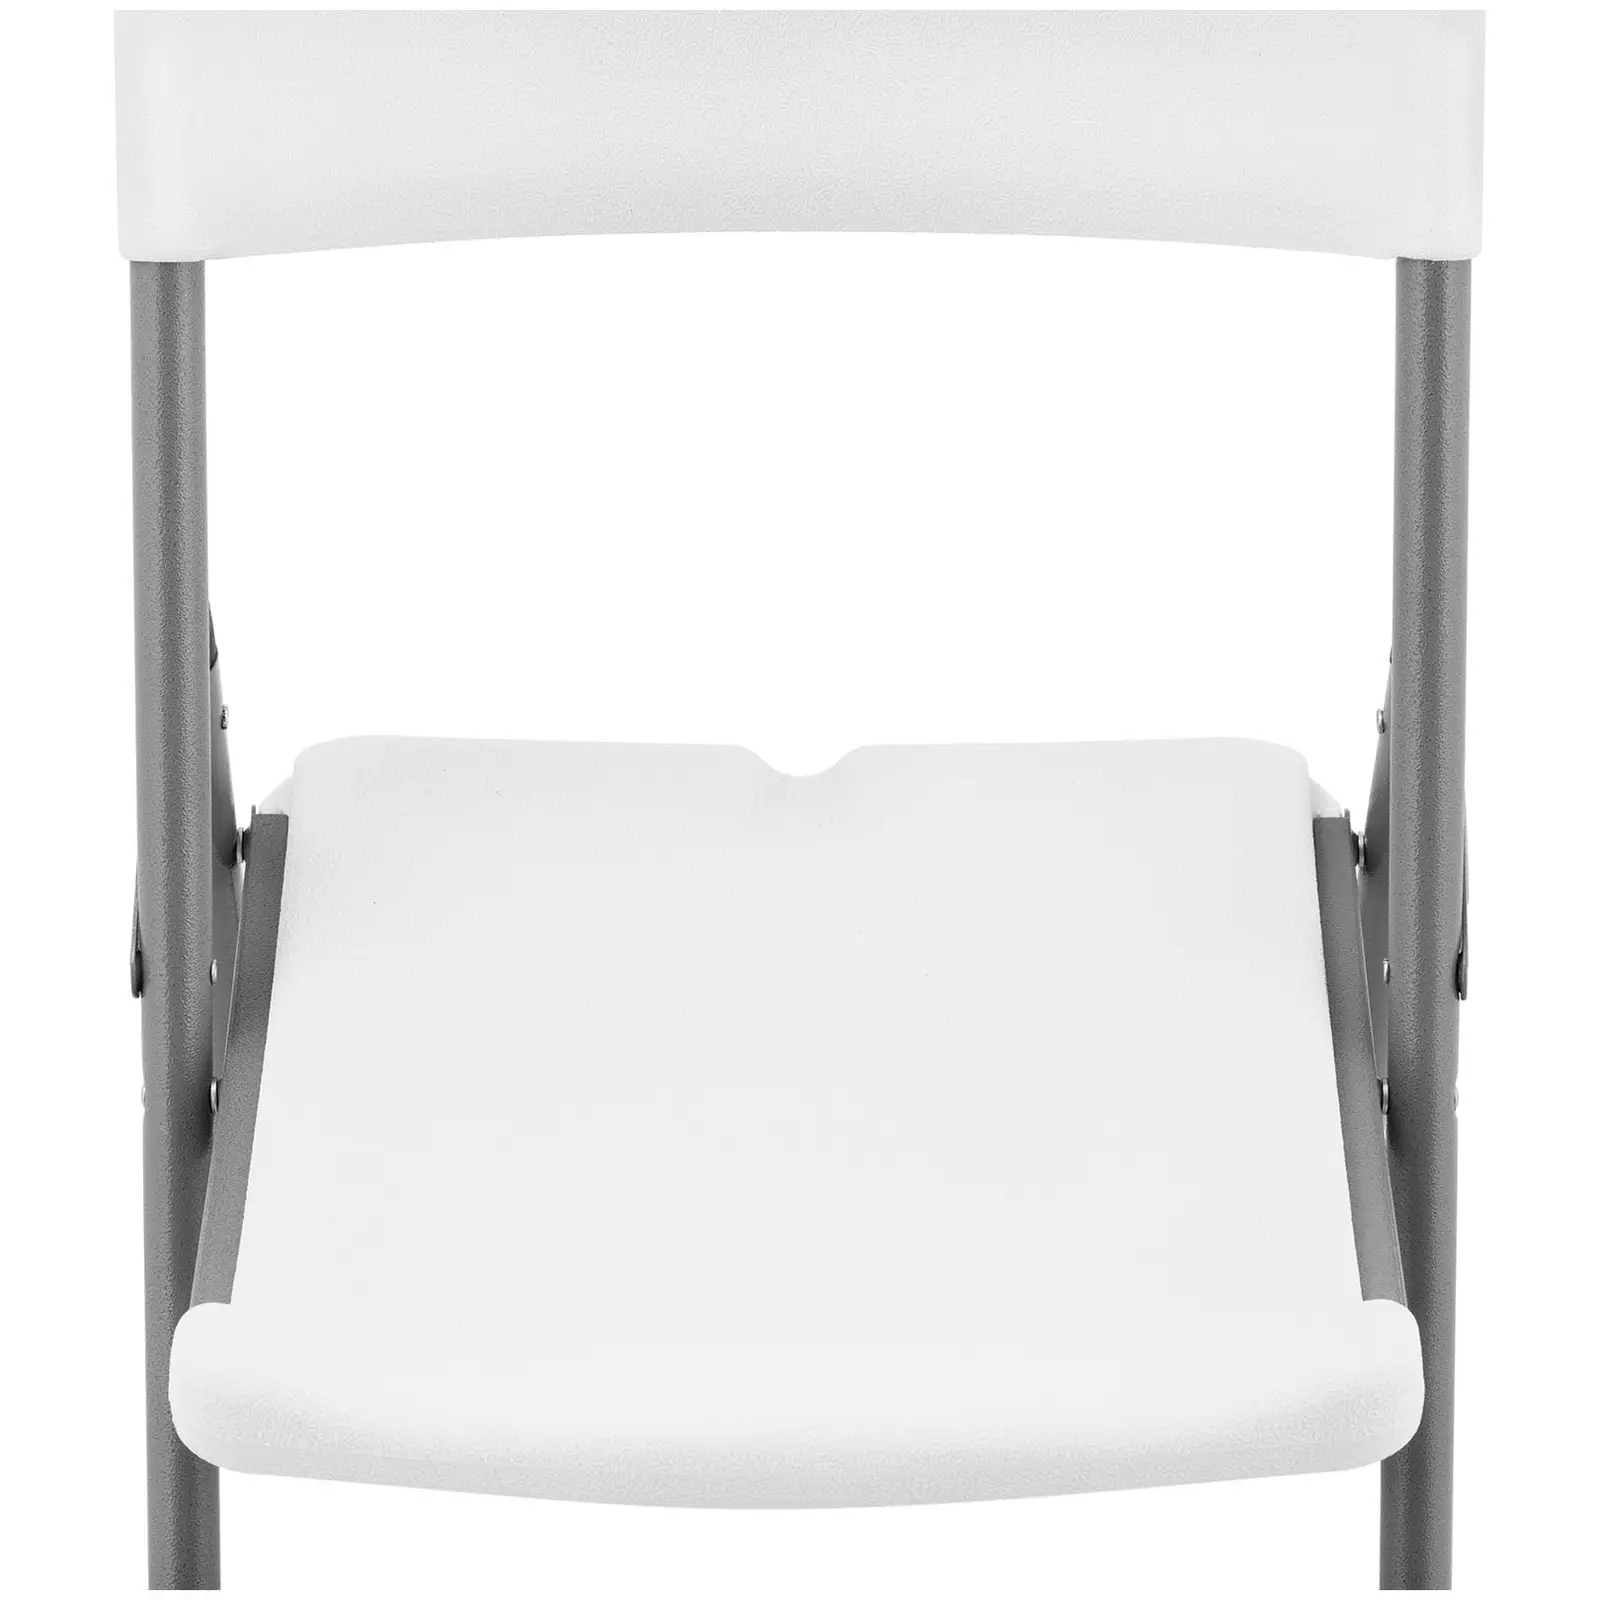 Skládací židle - 4 ks - Royal Catering - 180 kg - plocha pro sezení 40 x 38 cm - bílá barva